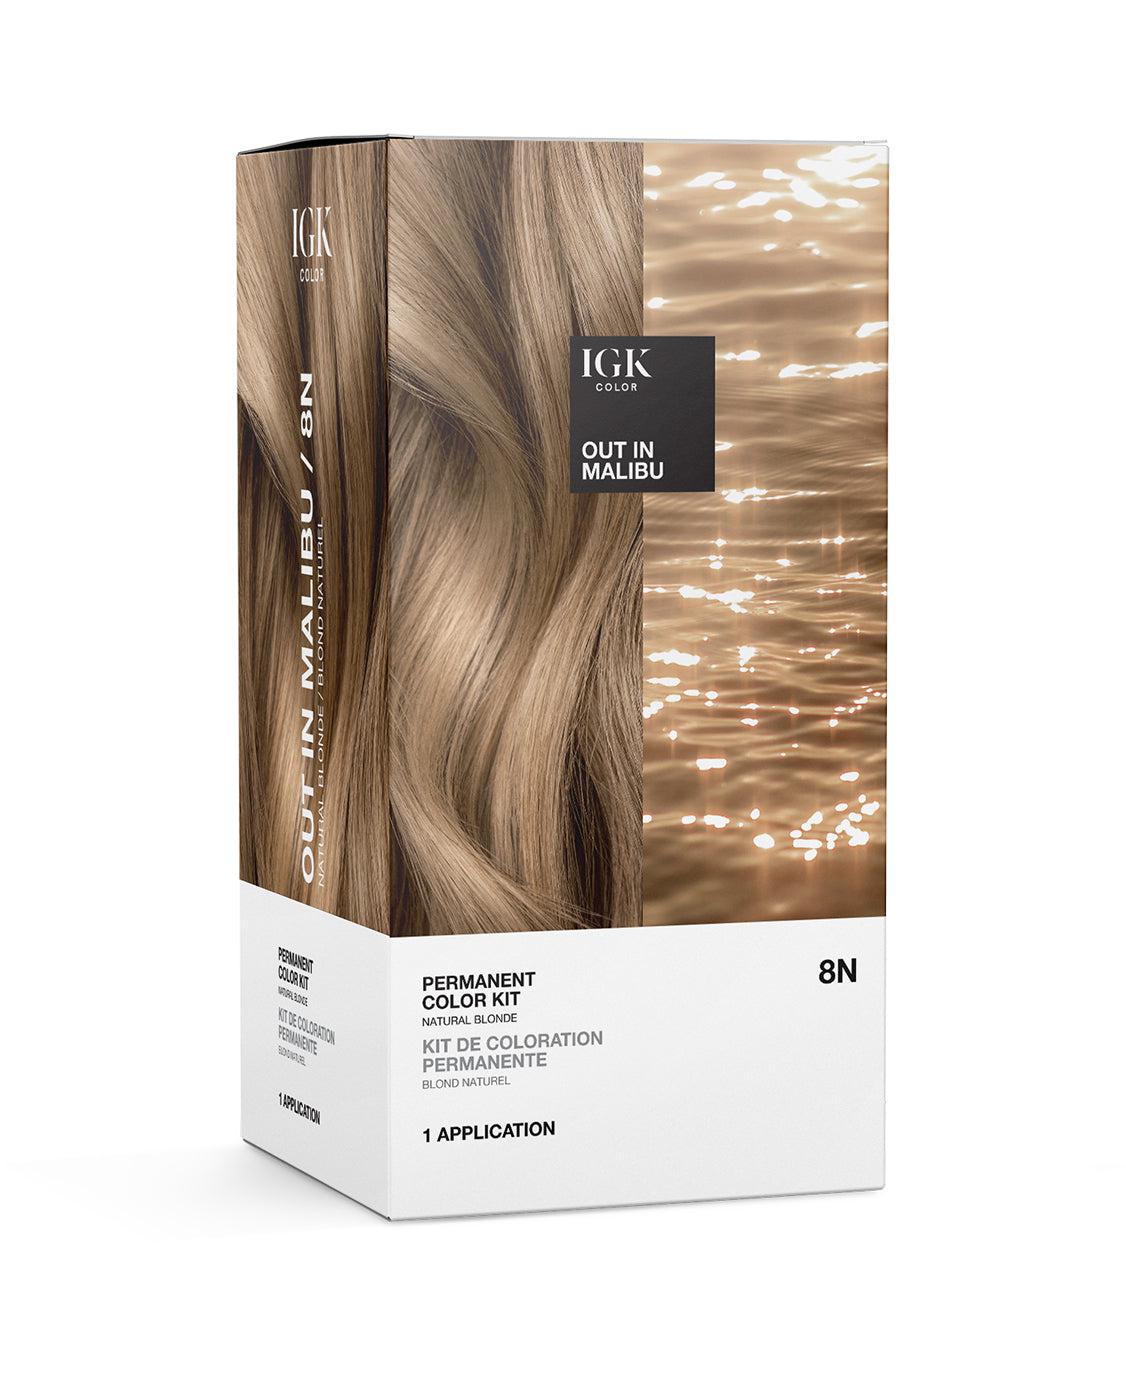 Igk Permanent Color Kit - 8N Out in Malibu (Light Natural Blonde)